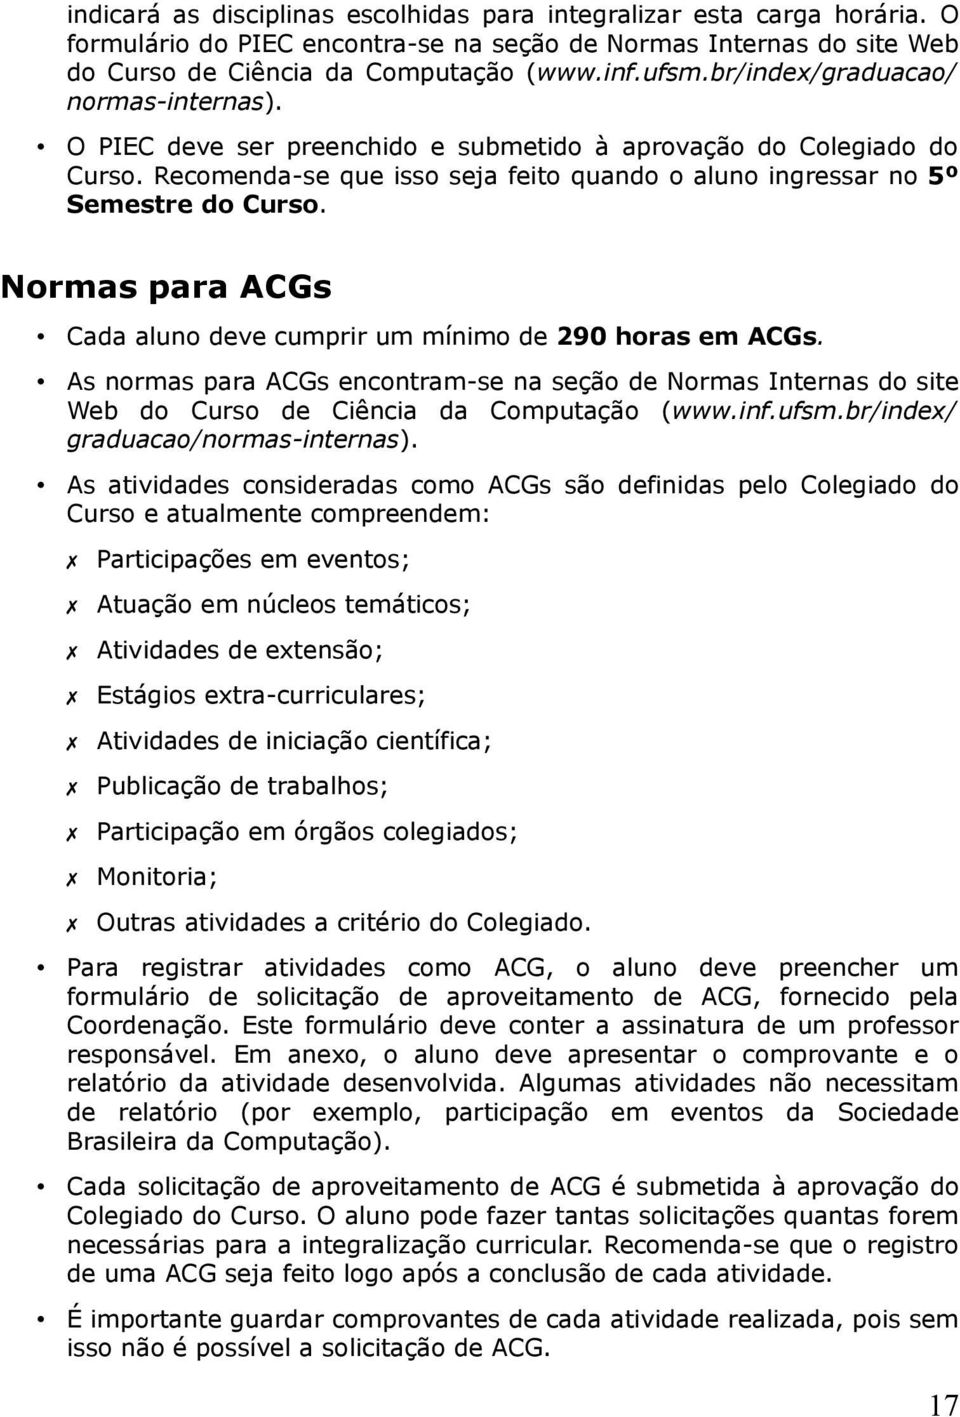 Normas para ACGs Cada aluno deve cumprir um mínimo de 290 horas em ACGs. As normas para ACGs encontram-se na seção de Normas Internas do site Web do Curso de Ciência da Computação (www.inf.ufsm.